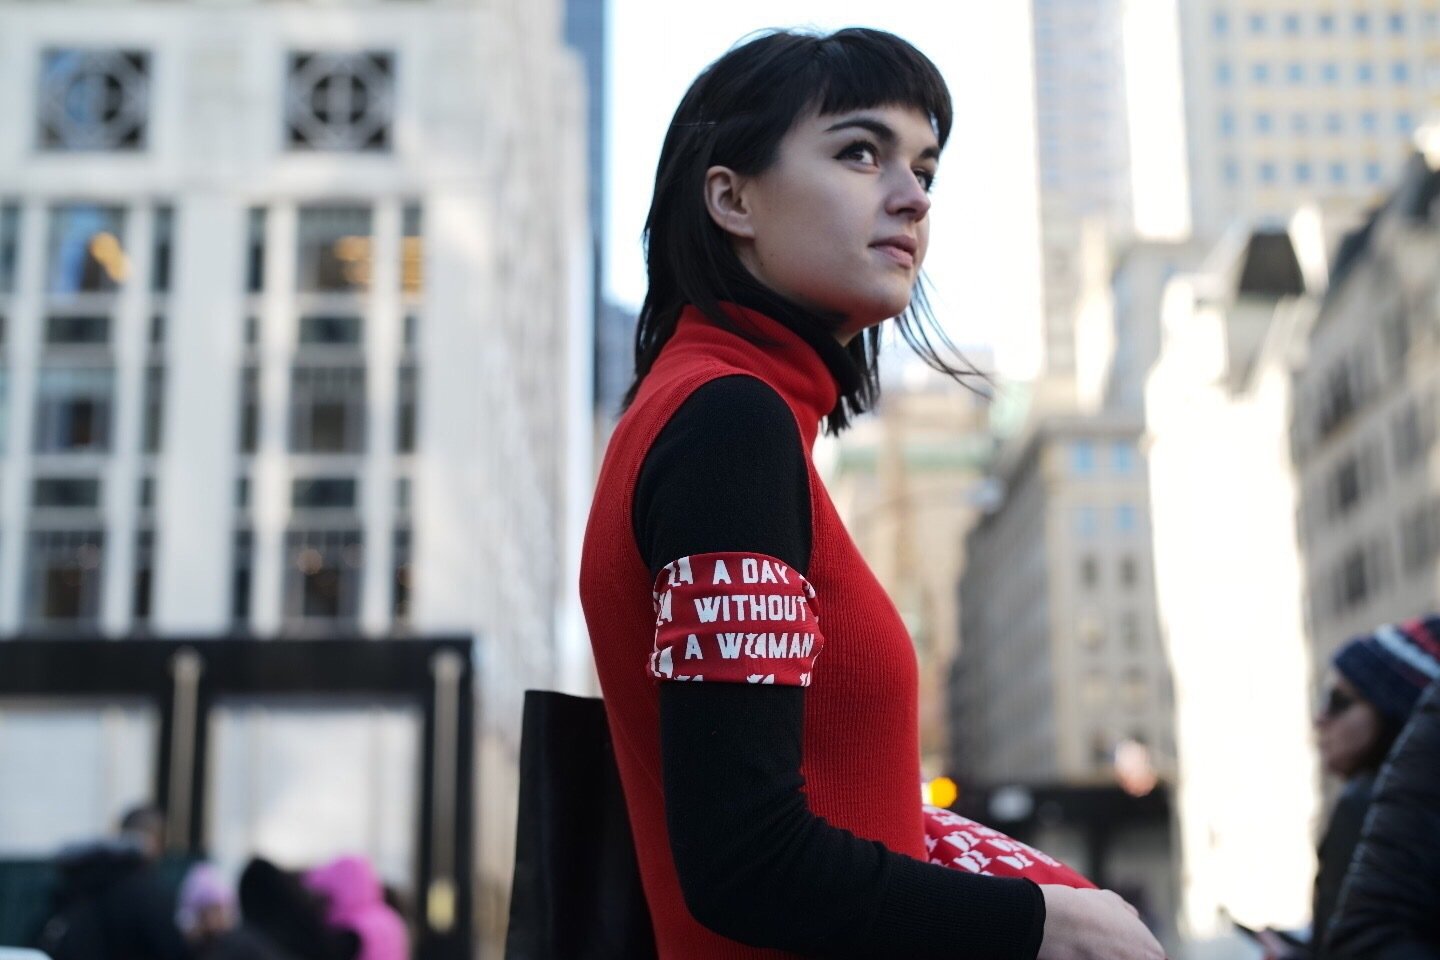   Phong trào đình công 'Một ngày không phụ nữ' tại New York kêu gọi phụ nữ nghỉ làm một ngày dù có lương hay không - Ảnh: Todd Heisler/The New York Times  